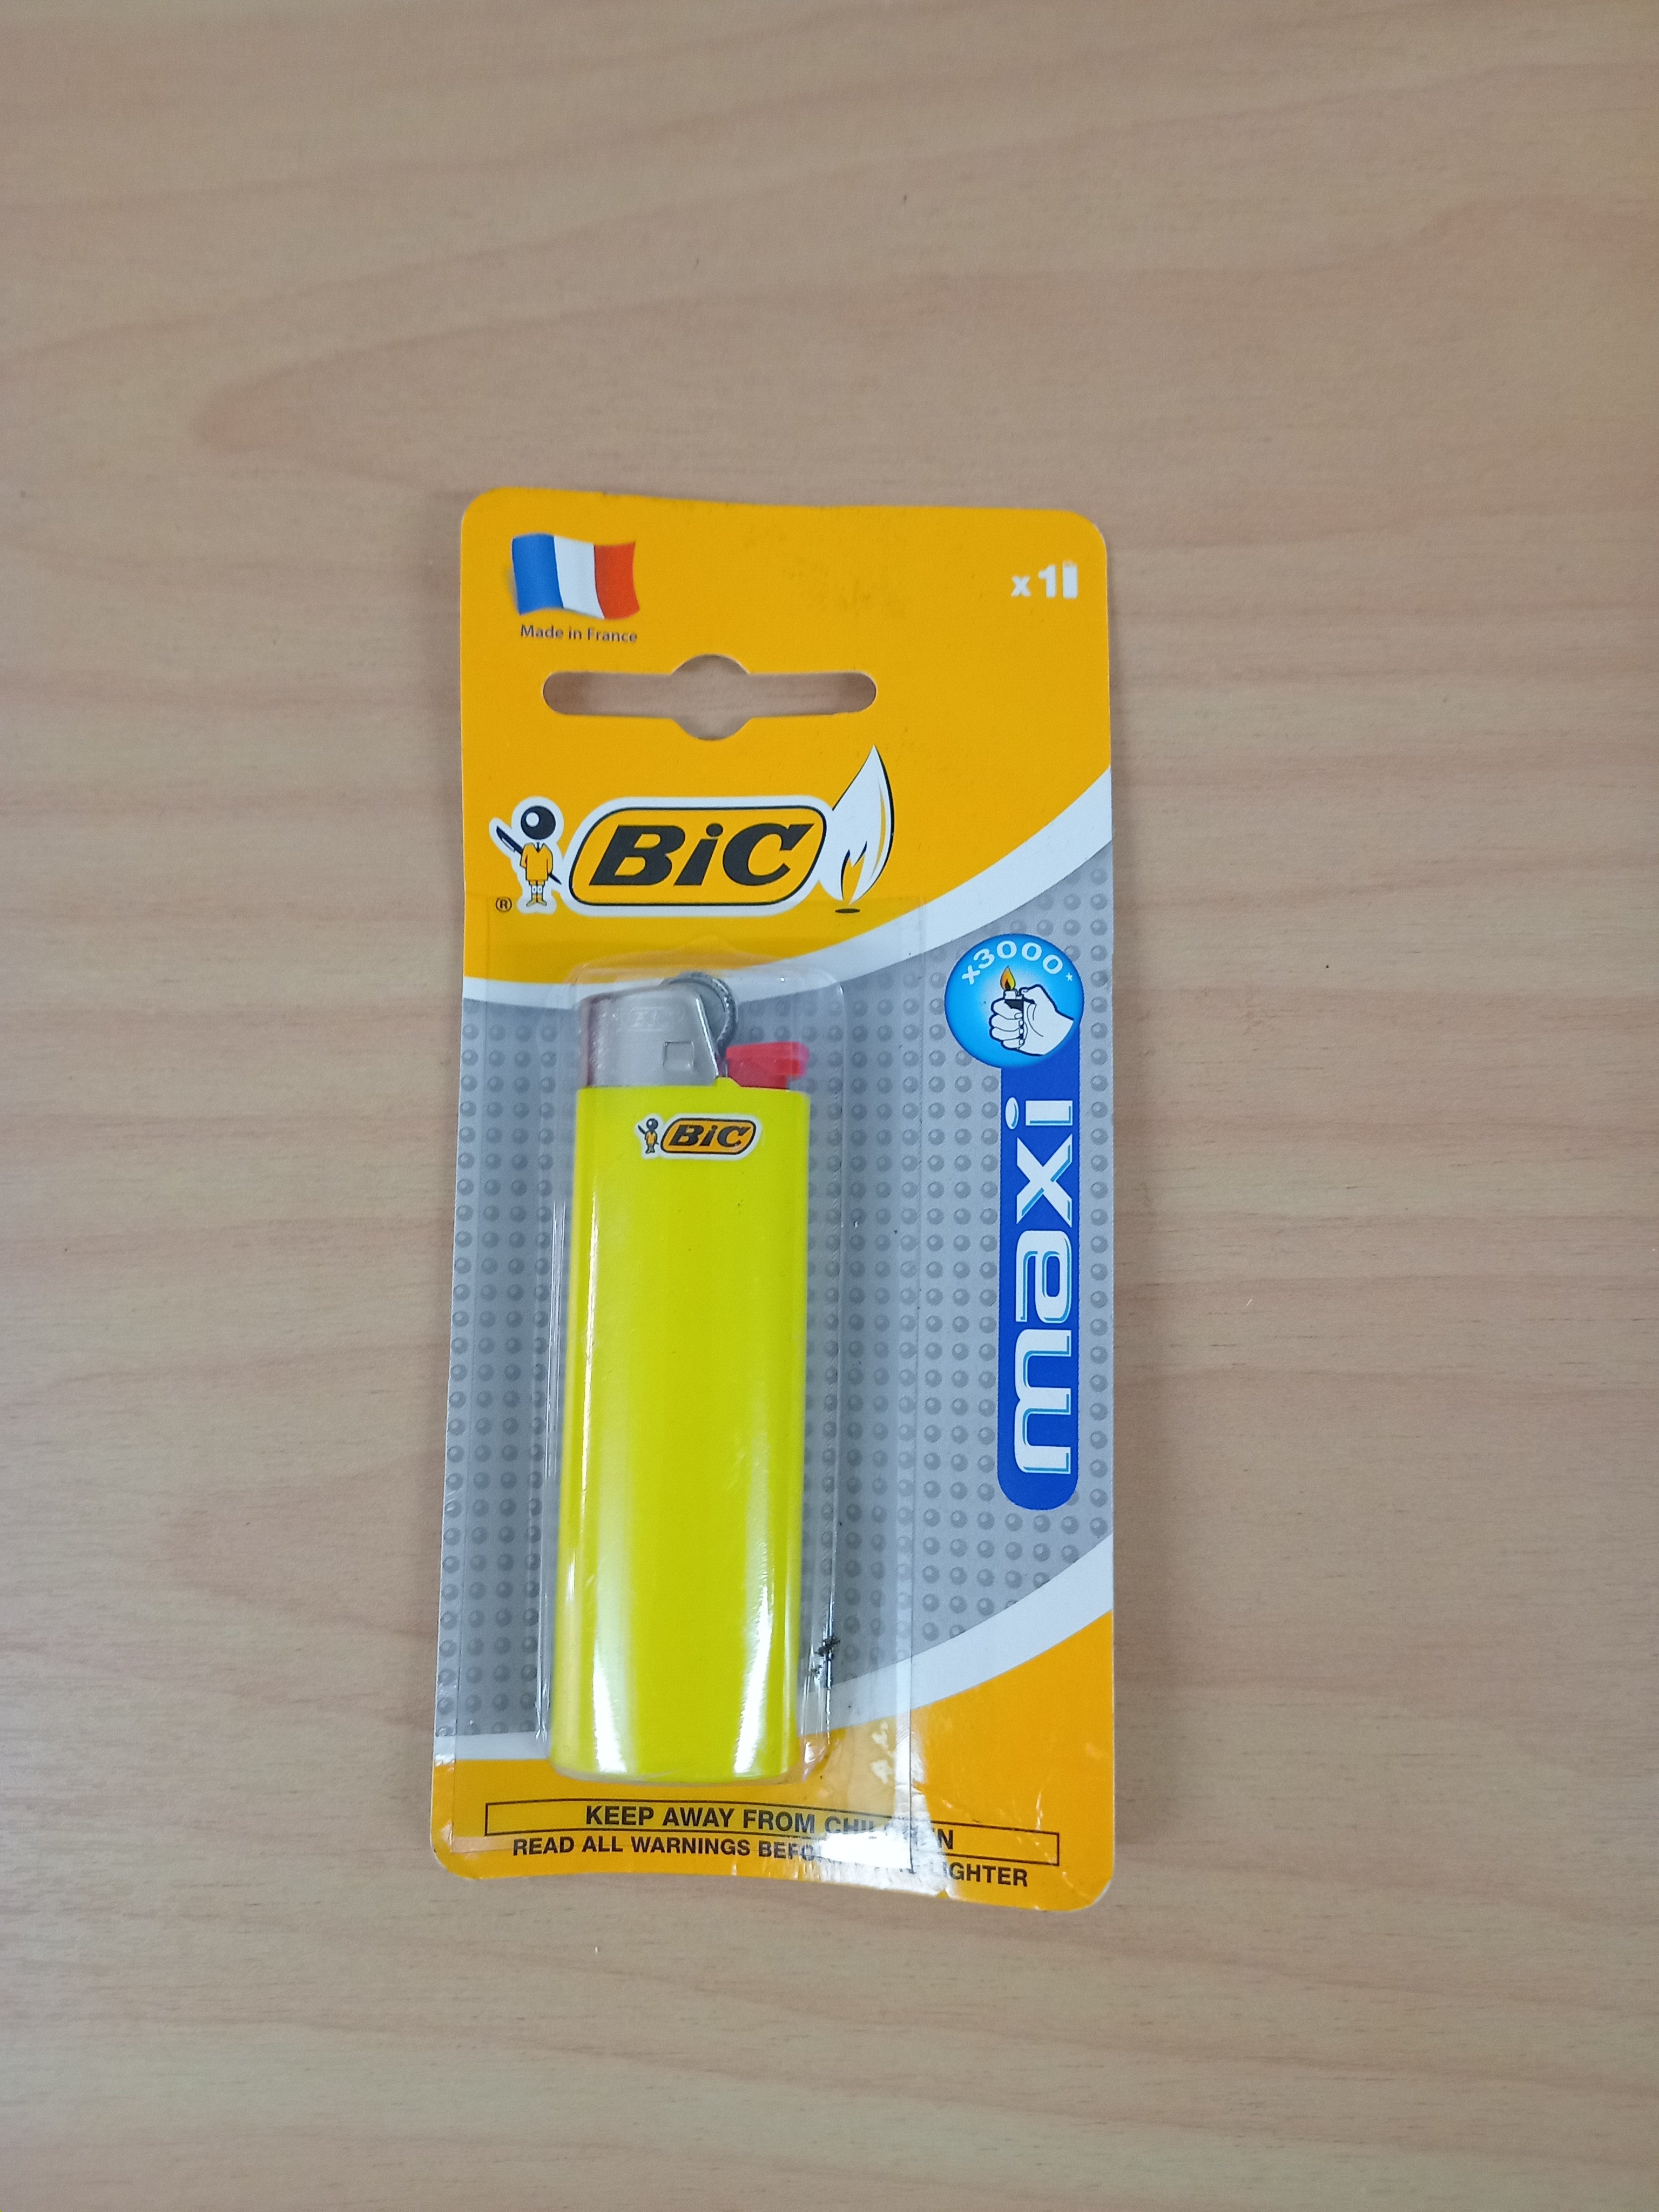 Bic lighter